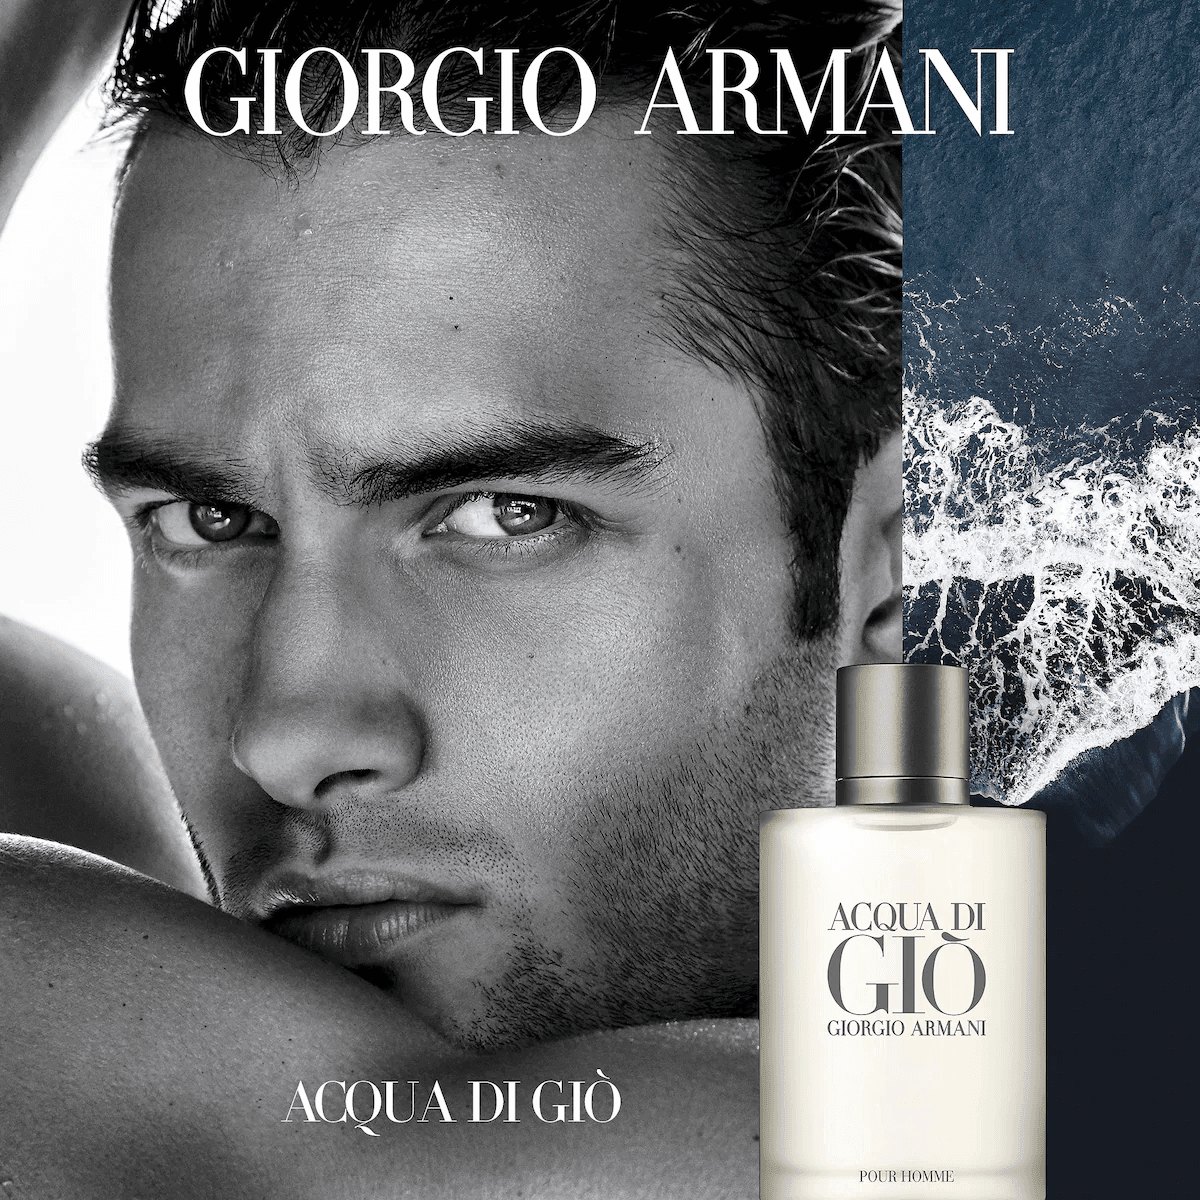 Giorgio Armani Acqua Di Gio EDT Refillable Travel Set - My Perfume Shop Australia